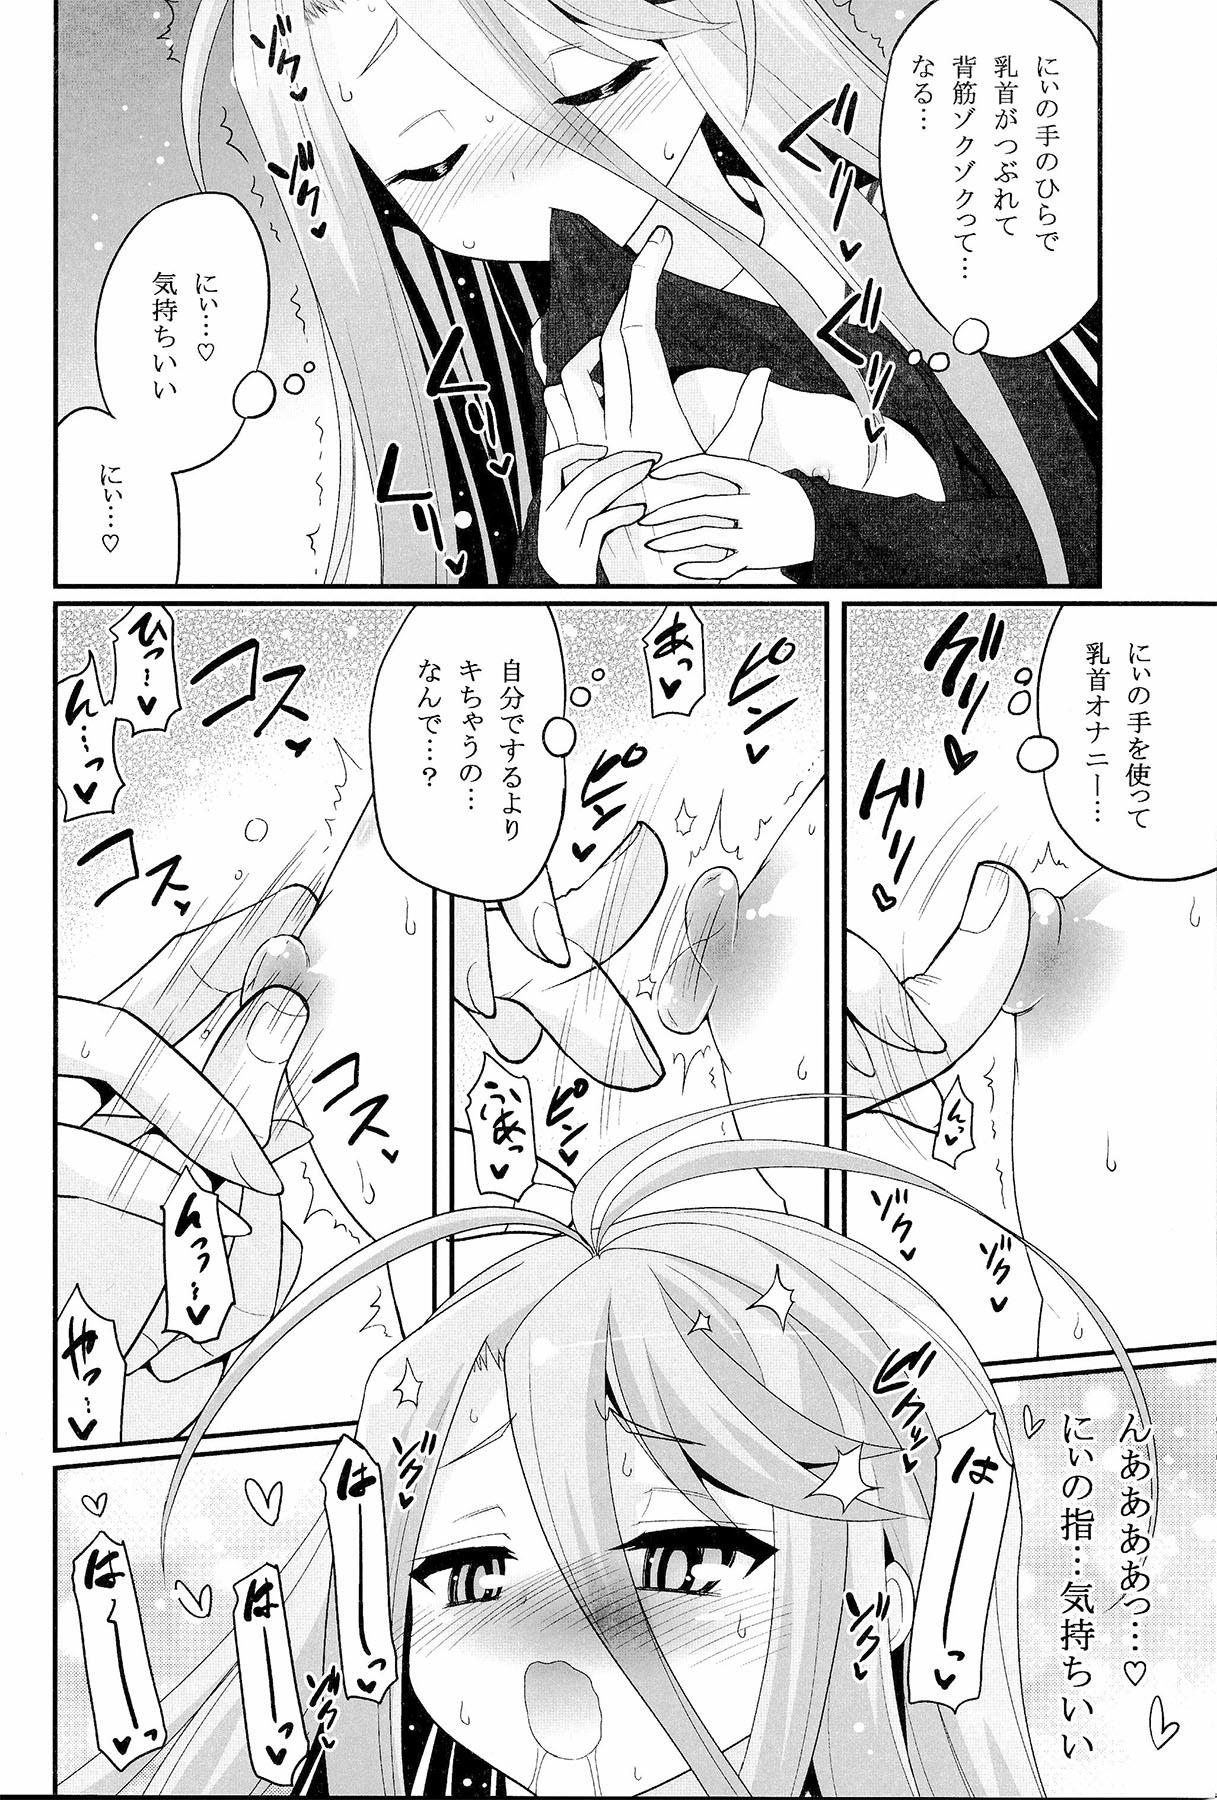 Busty Shiro-chan ga nekomi wo osoi ni kuru sou desu - No game no life Redhead - Page 5